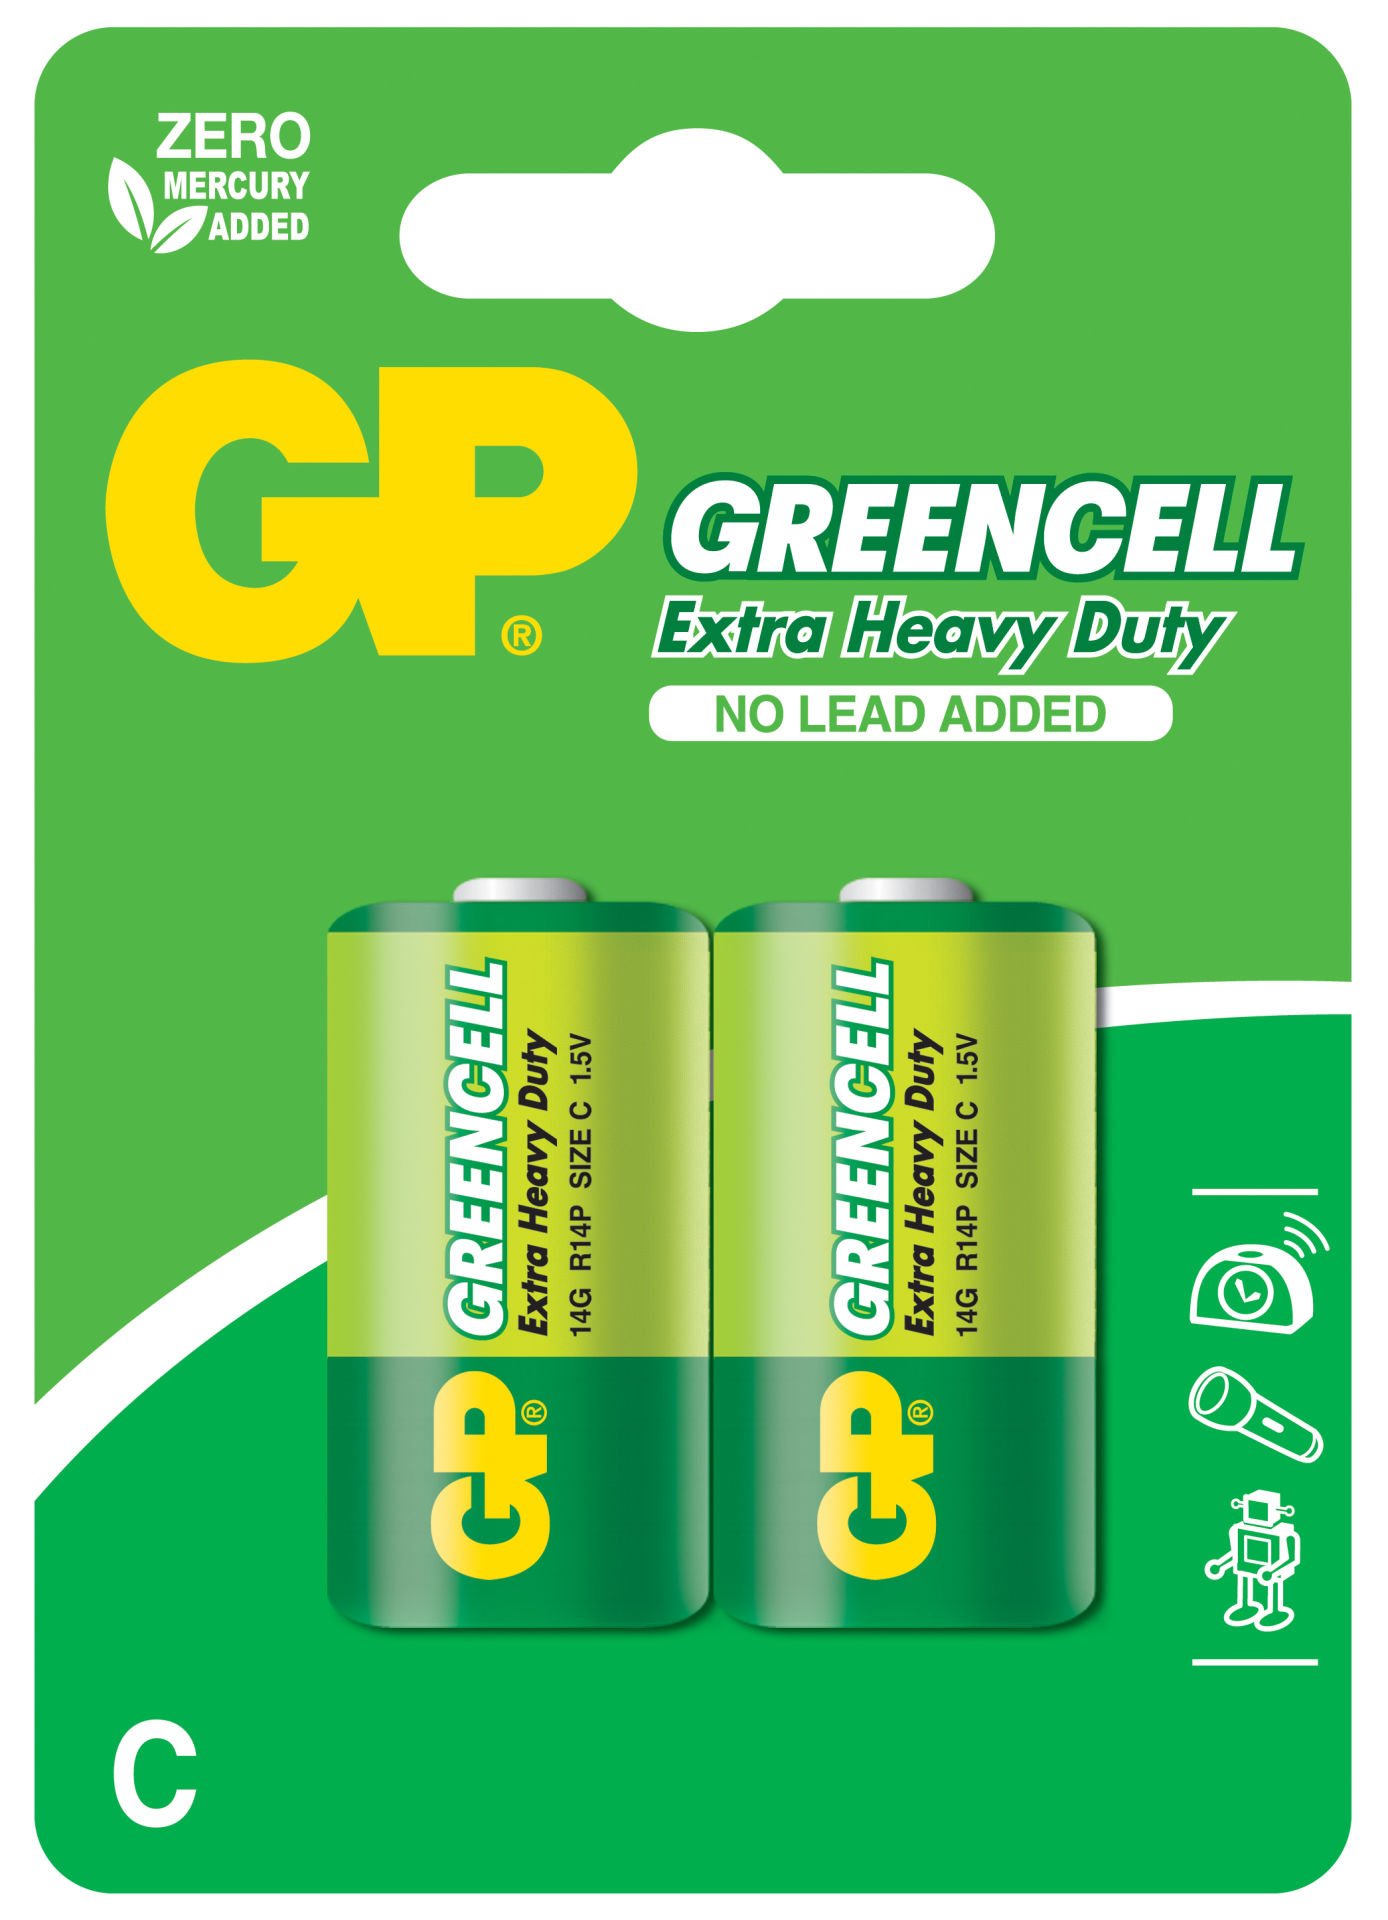 GP Greencel R14 Orta Boy Çinko Pil 2'li Paket GP14G-U2